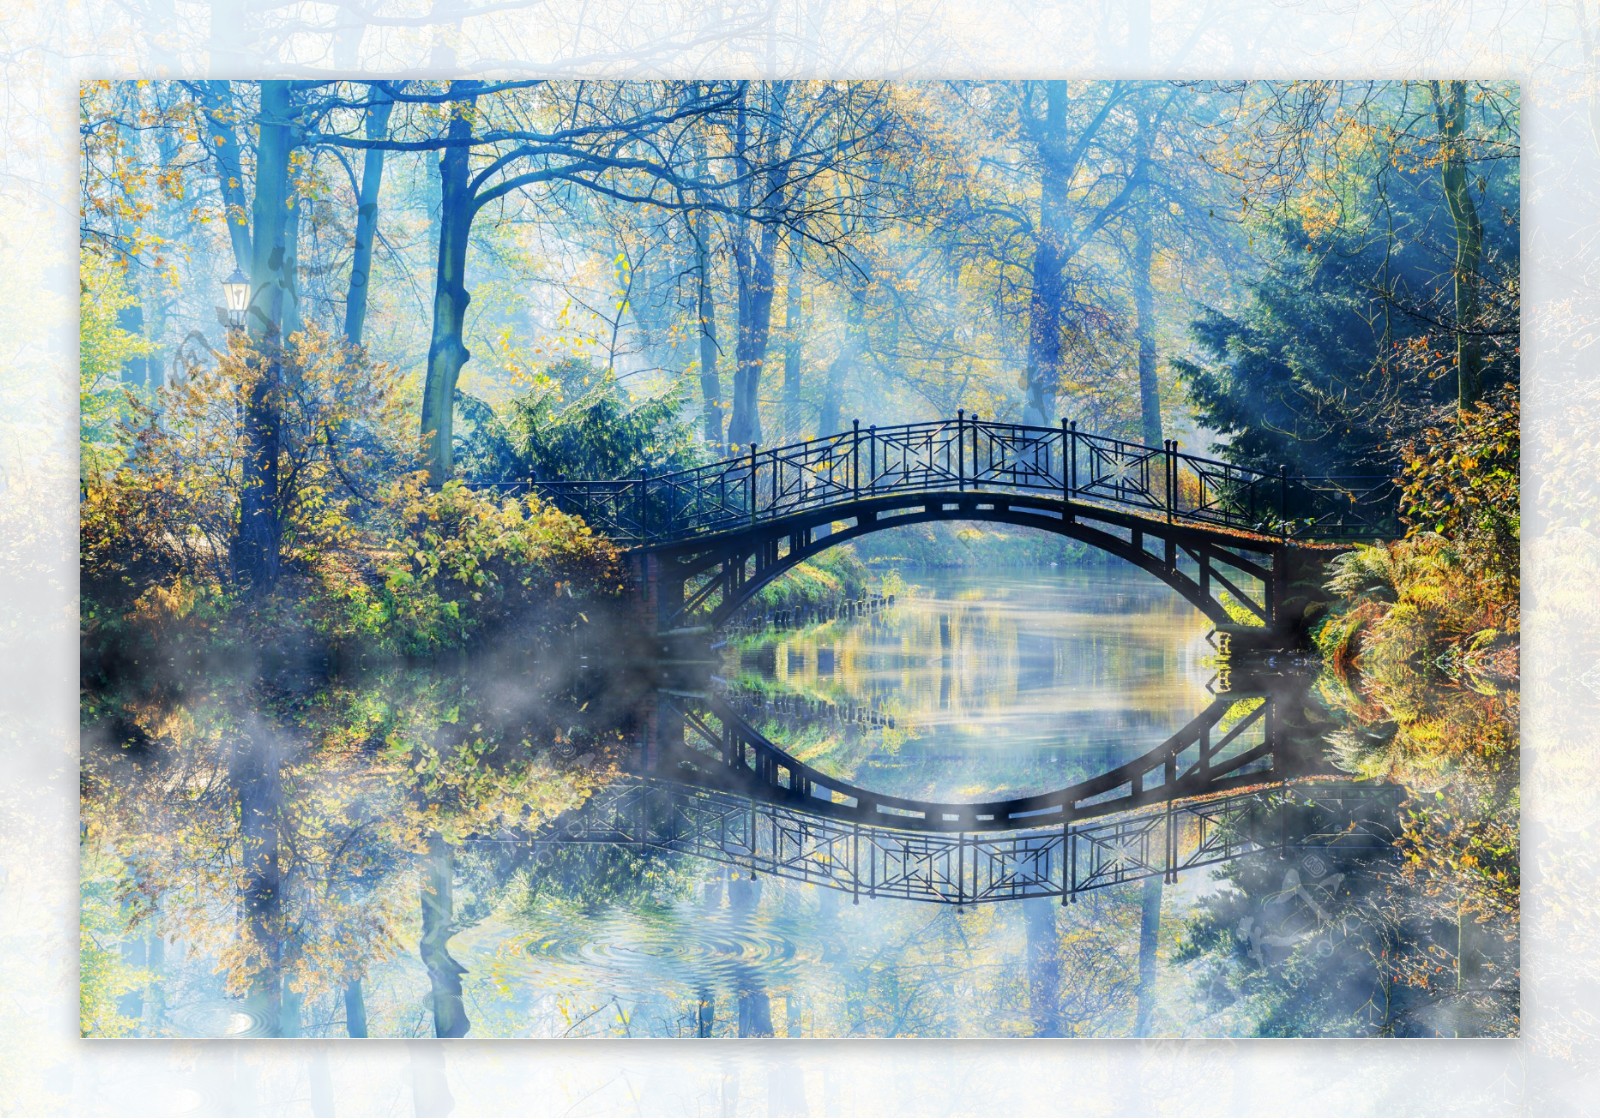 秋天树林里的拱桥图片